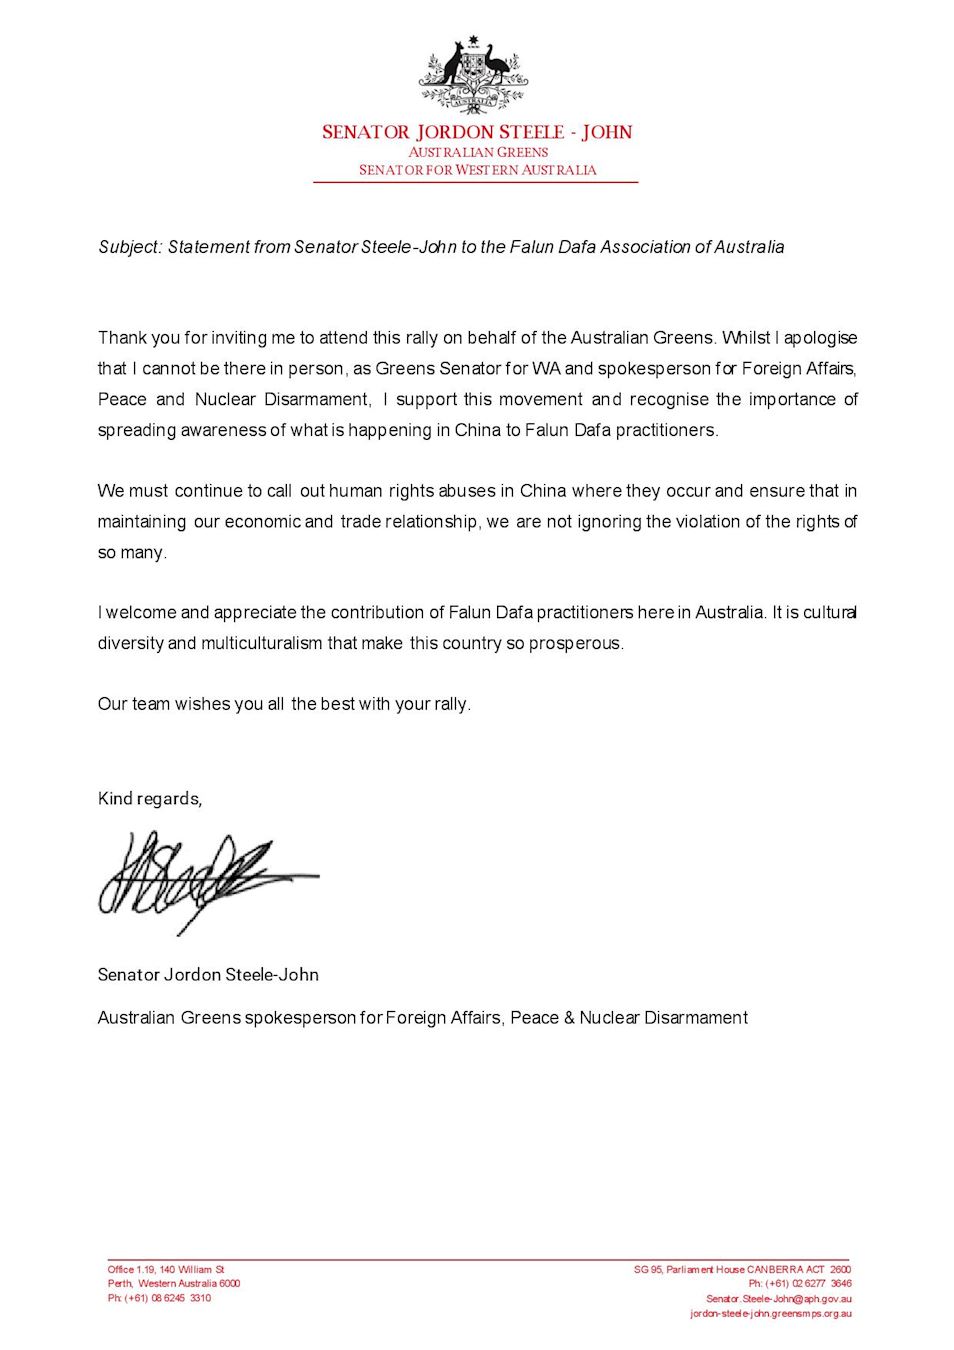 '圖2：西澳綠黨參議員喬丹﹒斯蒂爾-約翰（Jordon Steele-John）的支持信函'